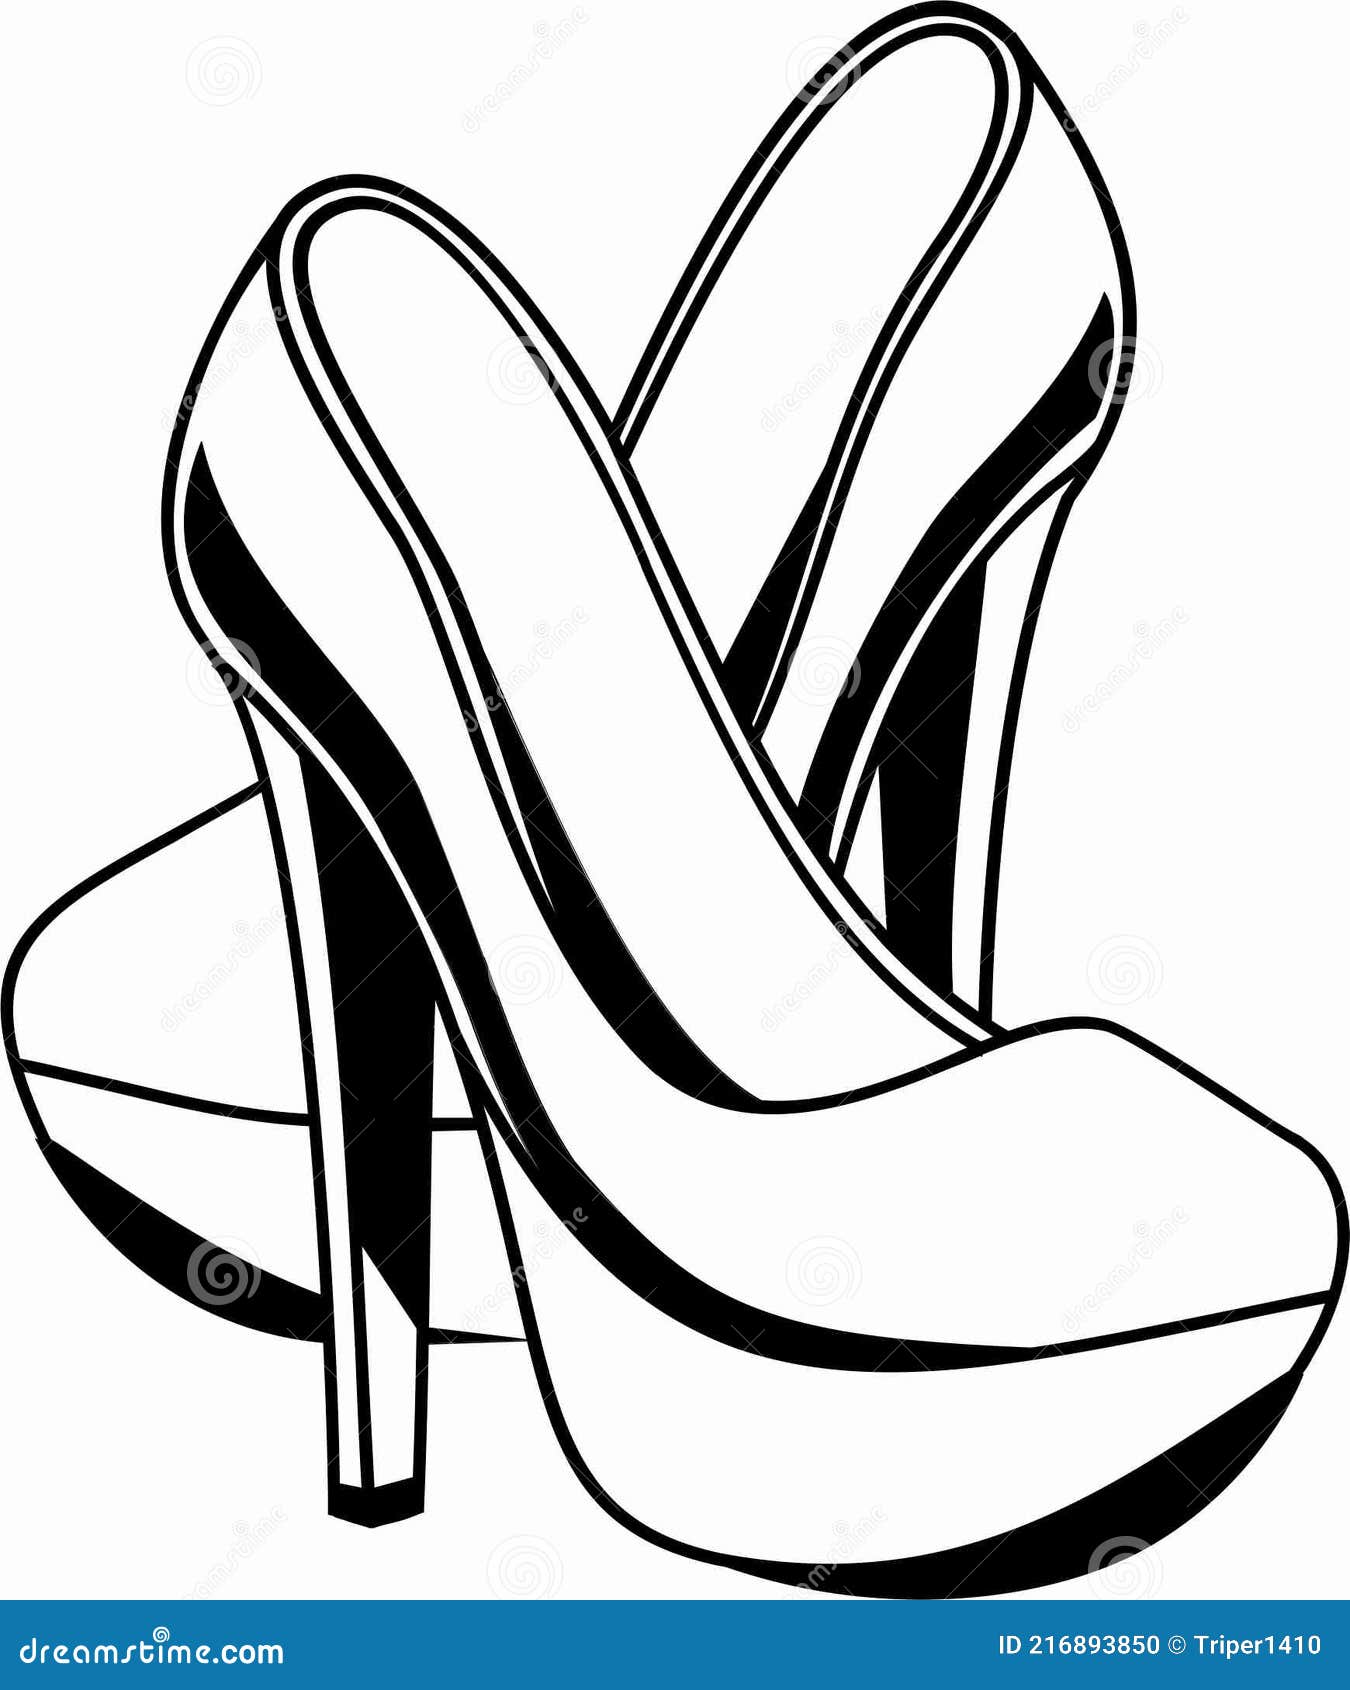 HIgh Heels for Men & Women | 7 weird shoes you can find online